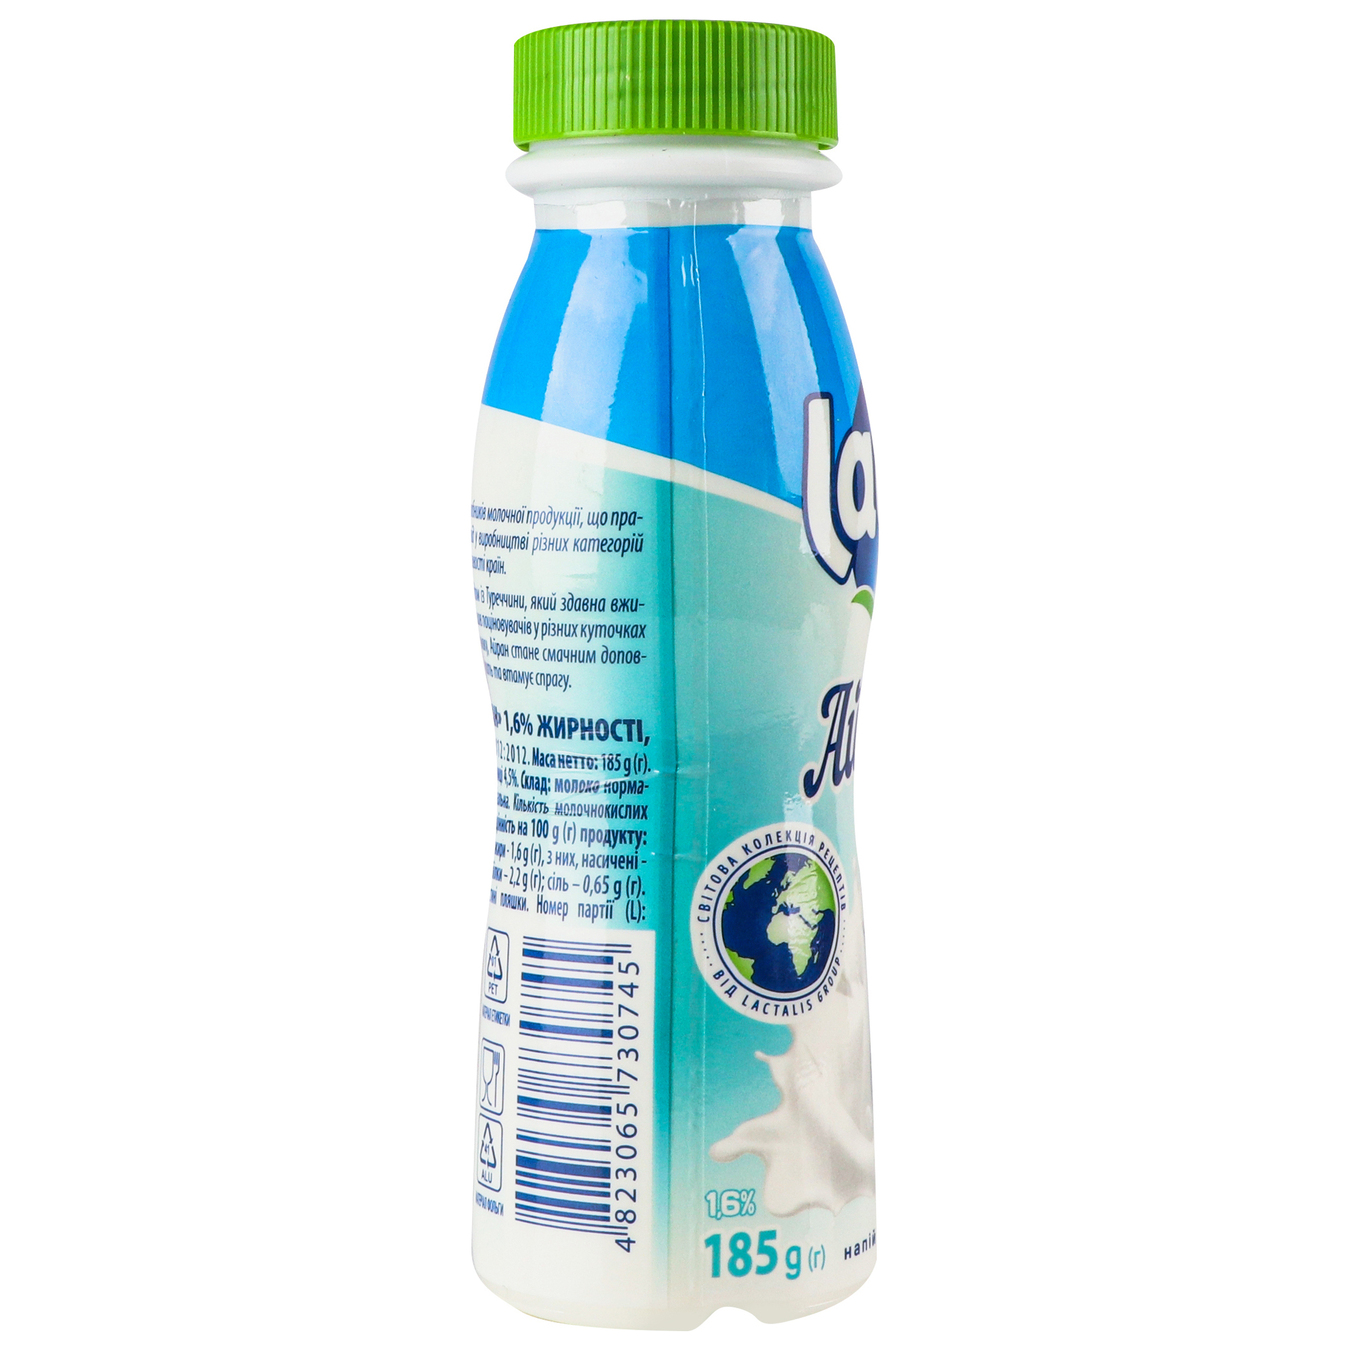 Напиток кисломолочный Лактель Айран питьевая бутылка 1,6% 185г 4